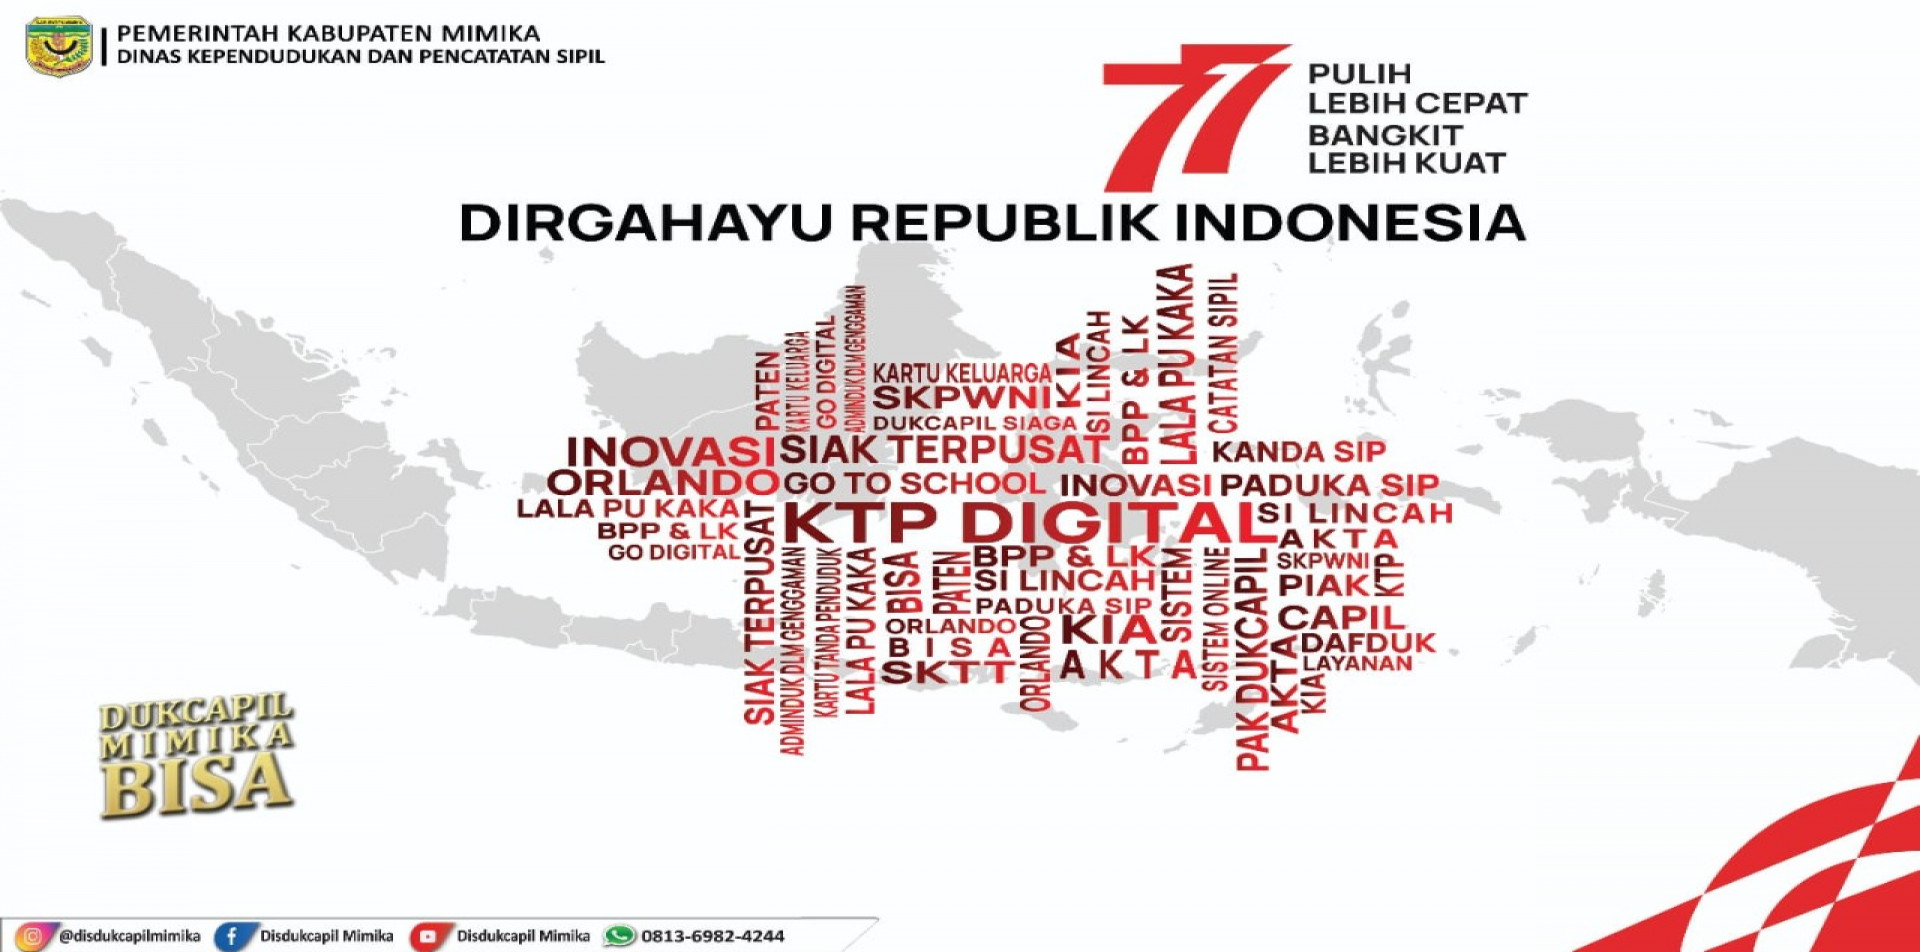 77 TAHUN DIRGAHAYU REPUBLIK INDONESIA